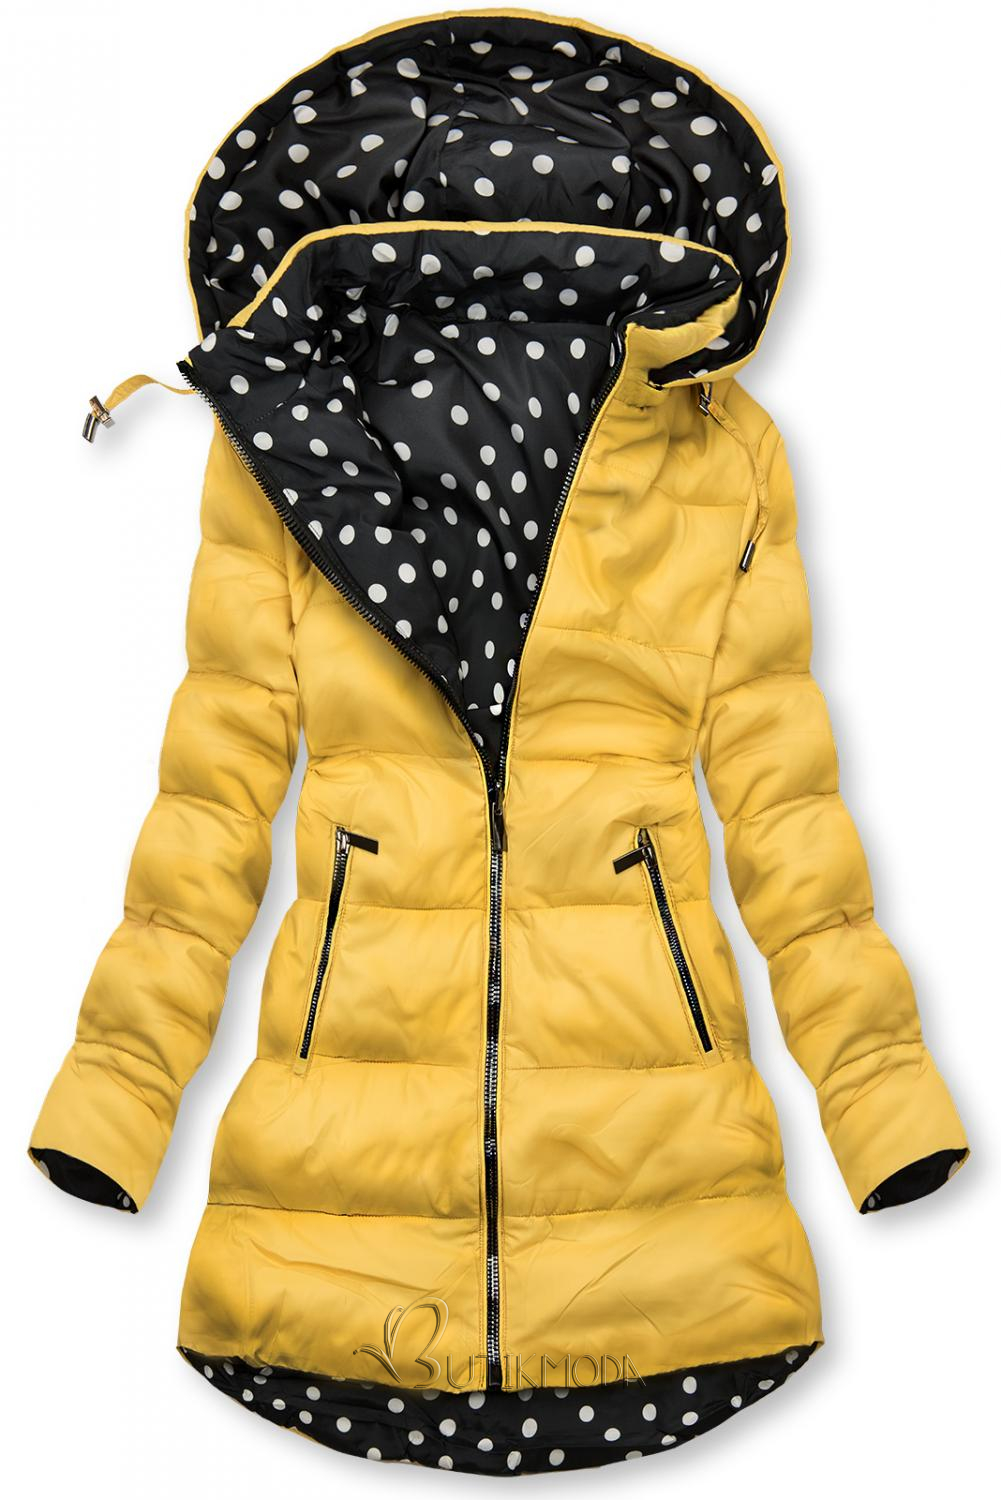 Sárga színű/pöttyös kifordítható kabát